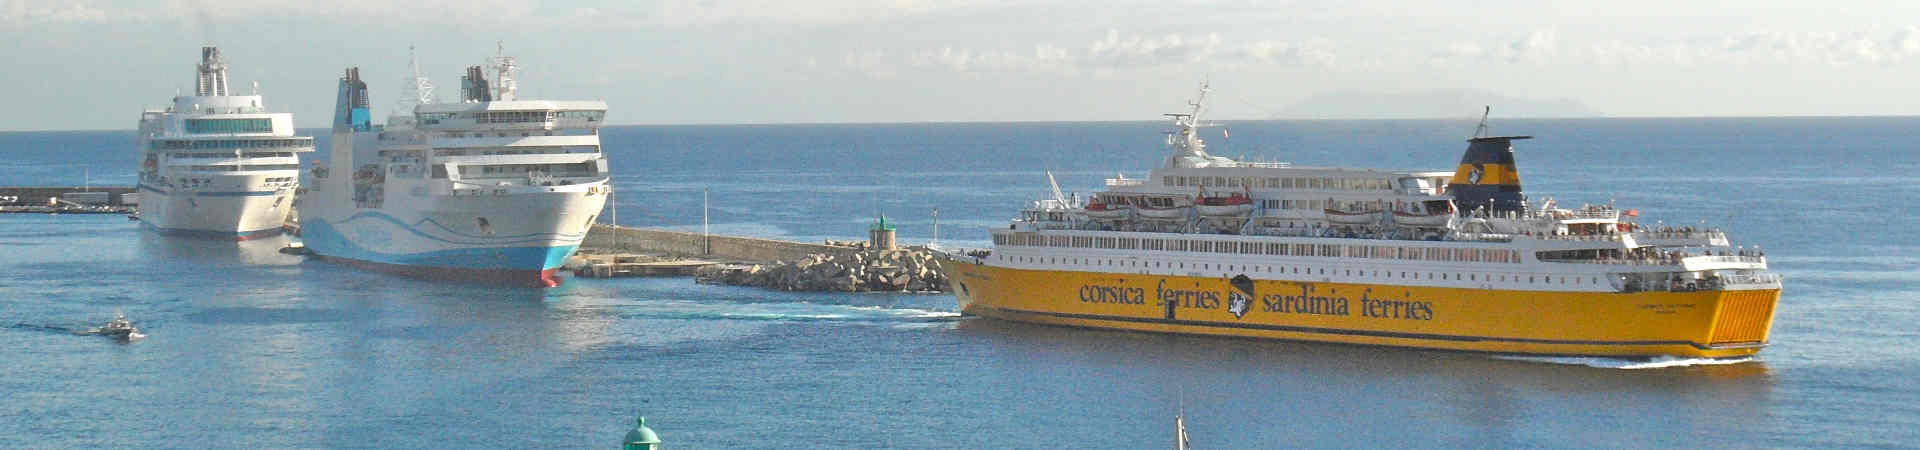 Imatge recurs del port de destinació Portivechju per a la ruta en ferry Golfo Aranci - Portivechju